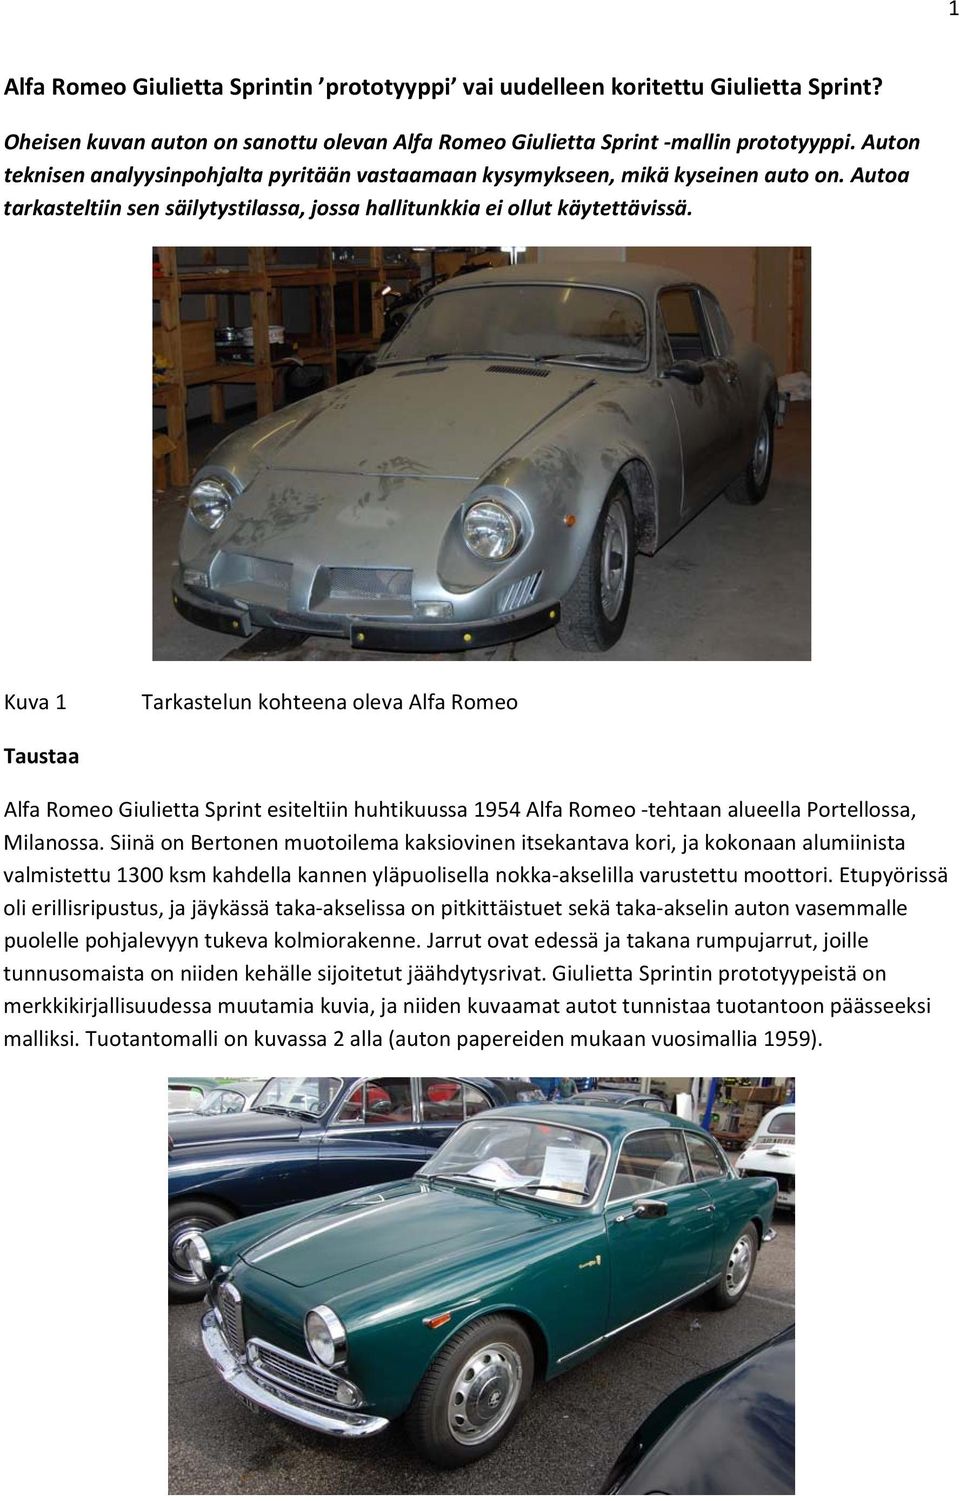 Kuva 1 Tarkastelun kohteena oleva Alfa Romeo Taustaa Alfa Romeo Giulietta Sprint esiteltiin huhtikuussa 1954 Alfa Romeo tehtaan alueella Portellossa, Milanossa.